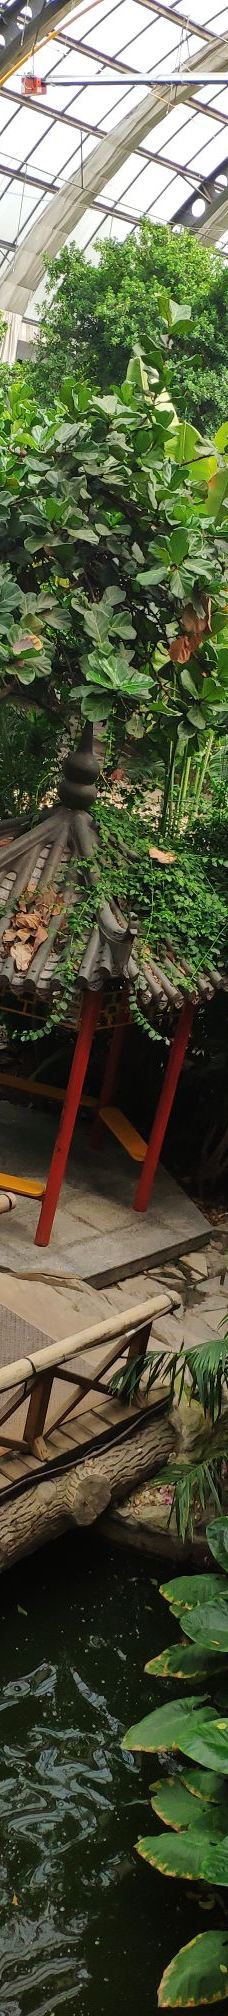 天津热带植物观光园-天津